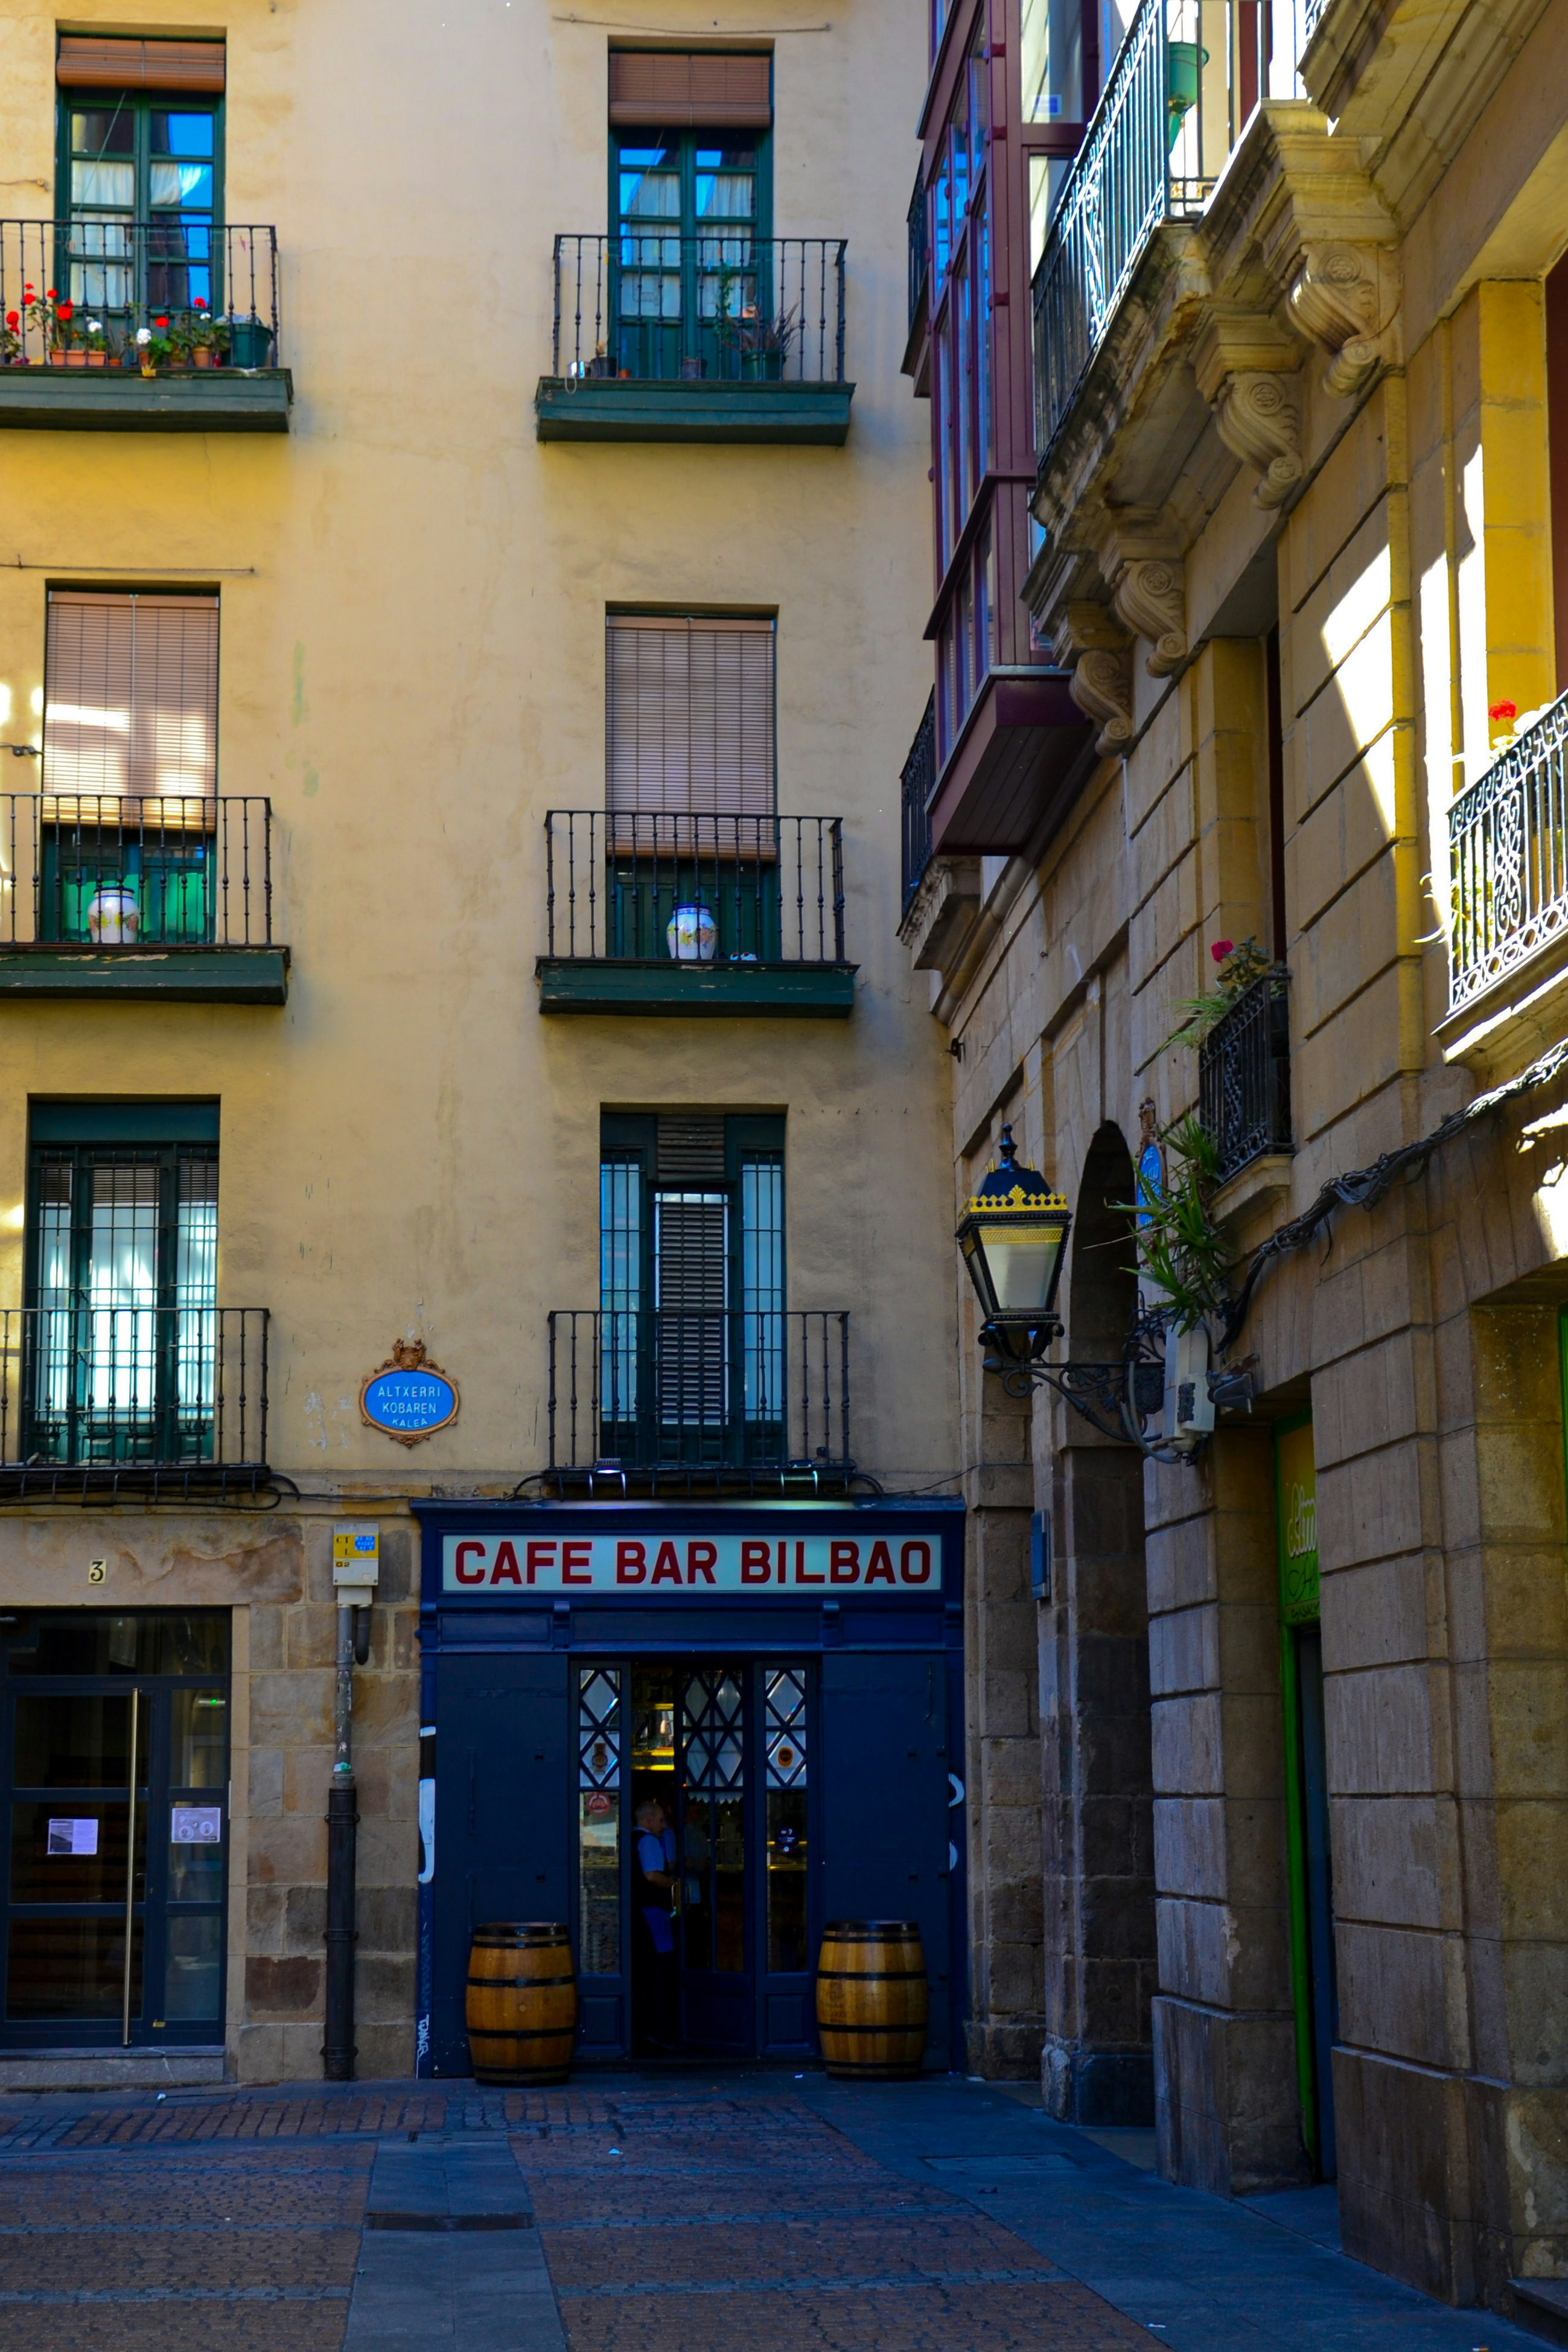 Cafe bar Bilbao